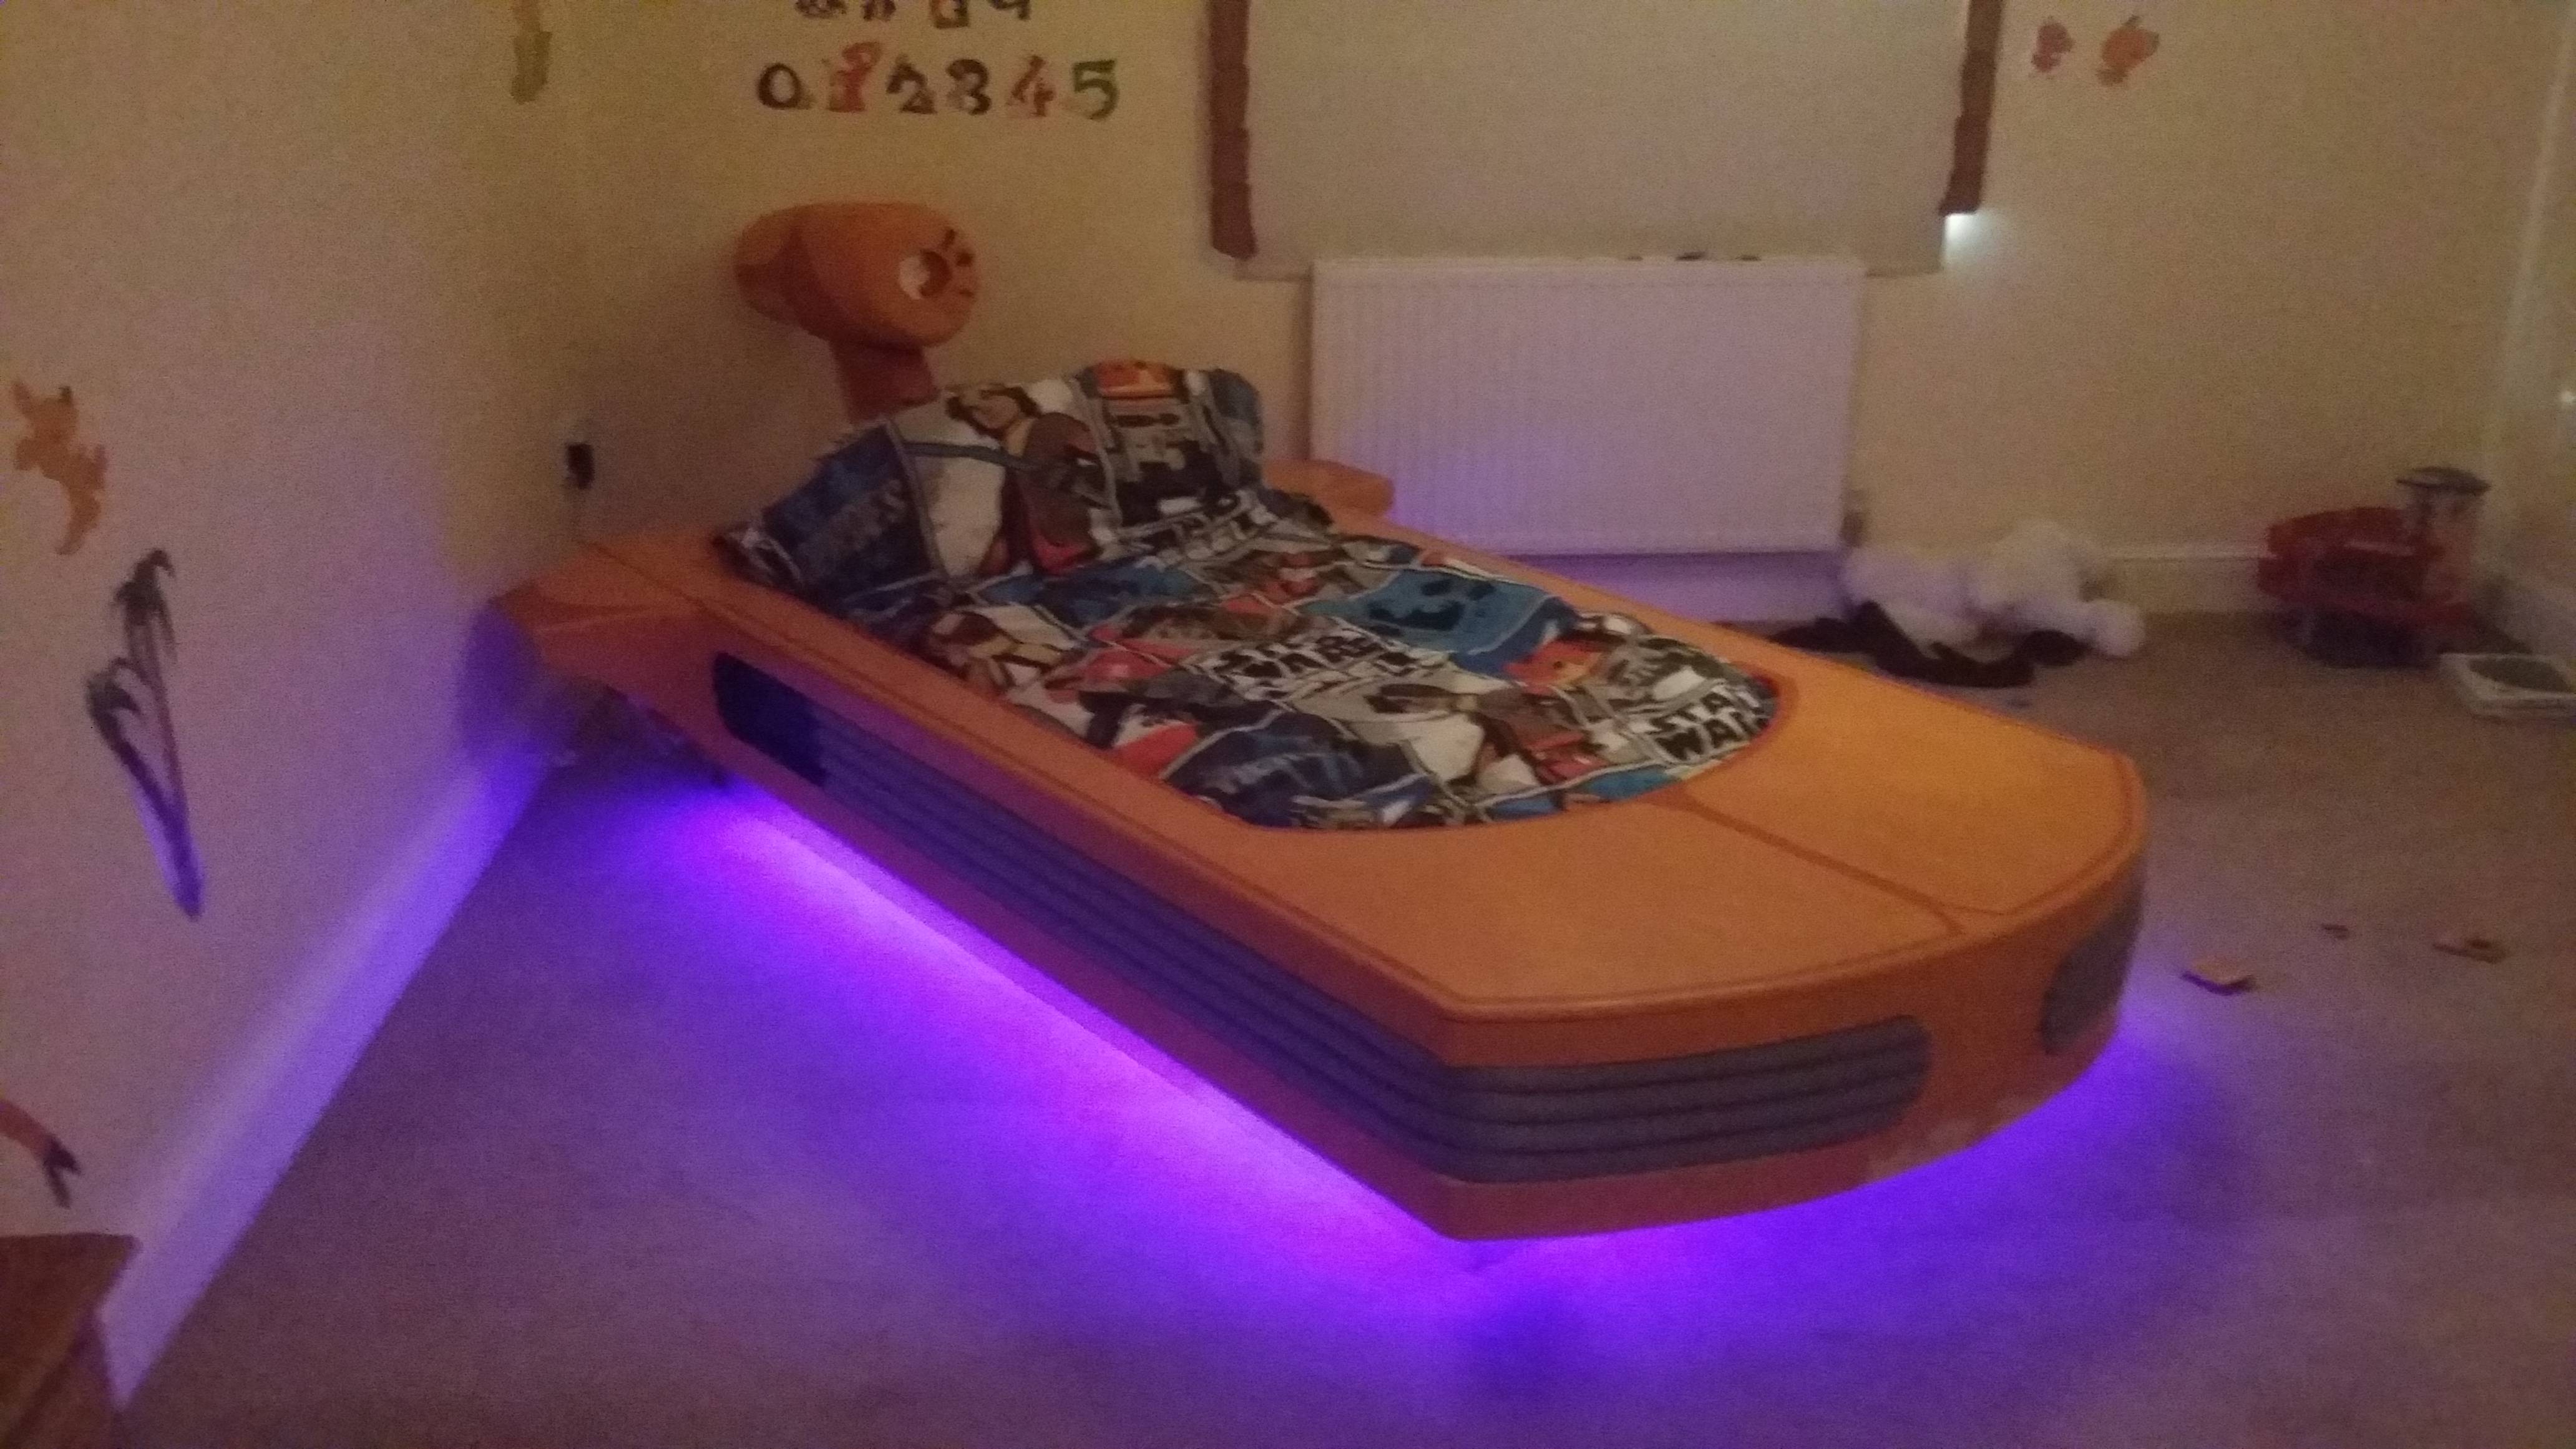 Coolest Dad Builds Floating Star Wars Bed - Platform Beds Online Blog